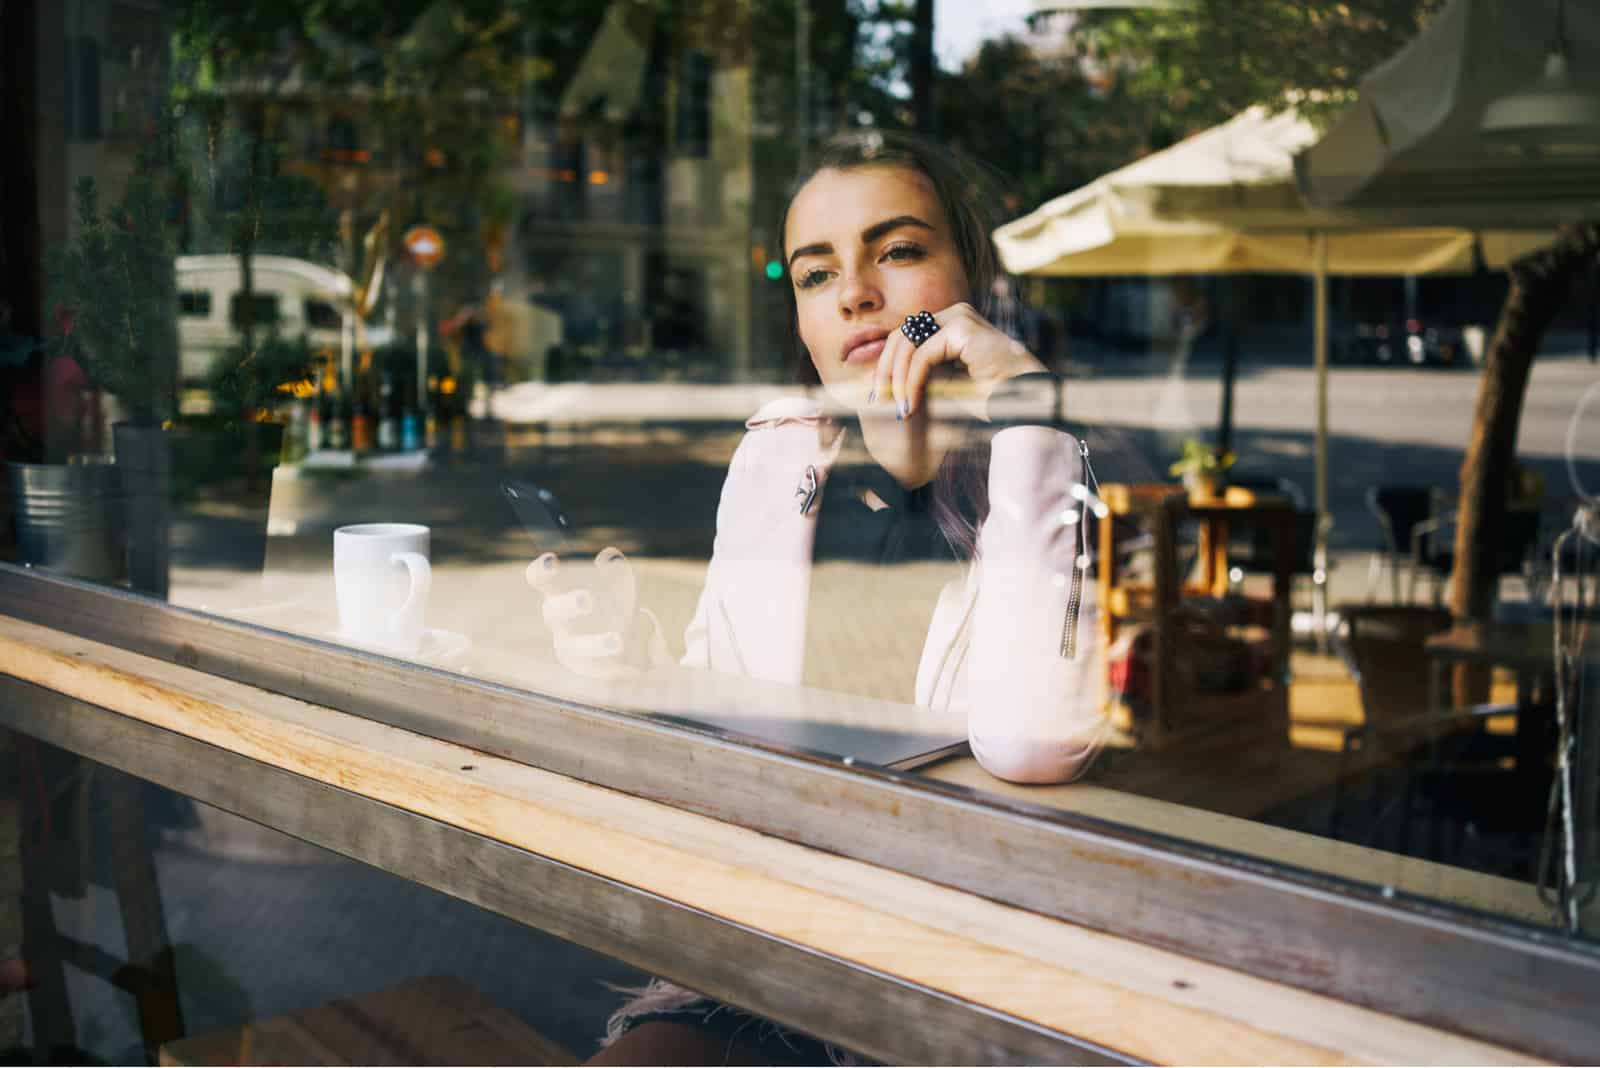 une femme imaginaire aux longs cheveux bruns est assise derrière un traîneau et tient un téléphone portable dans sa main